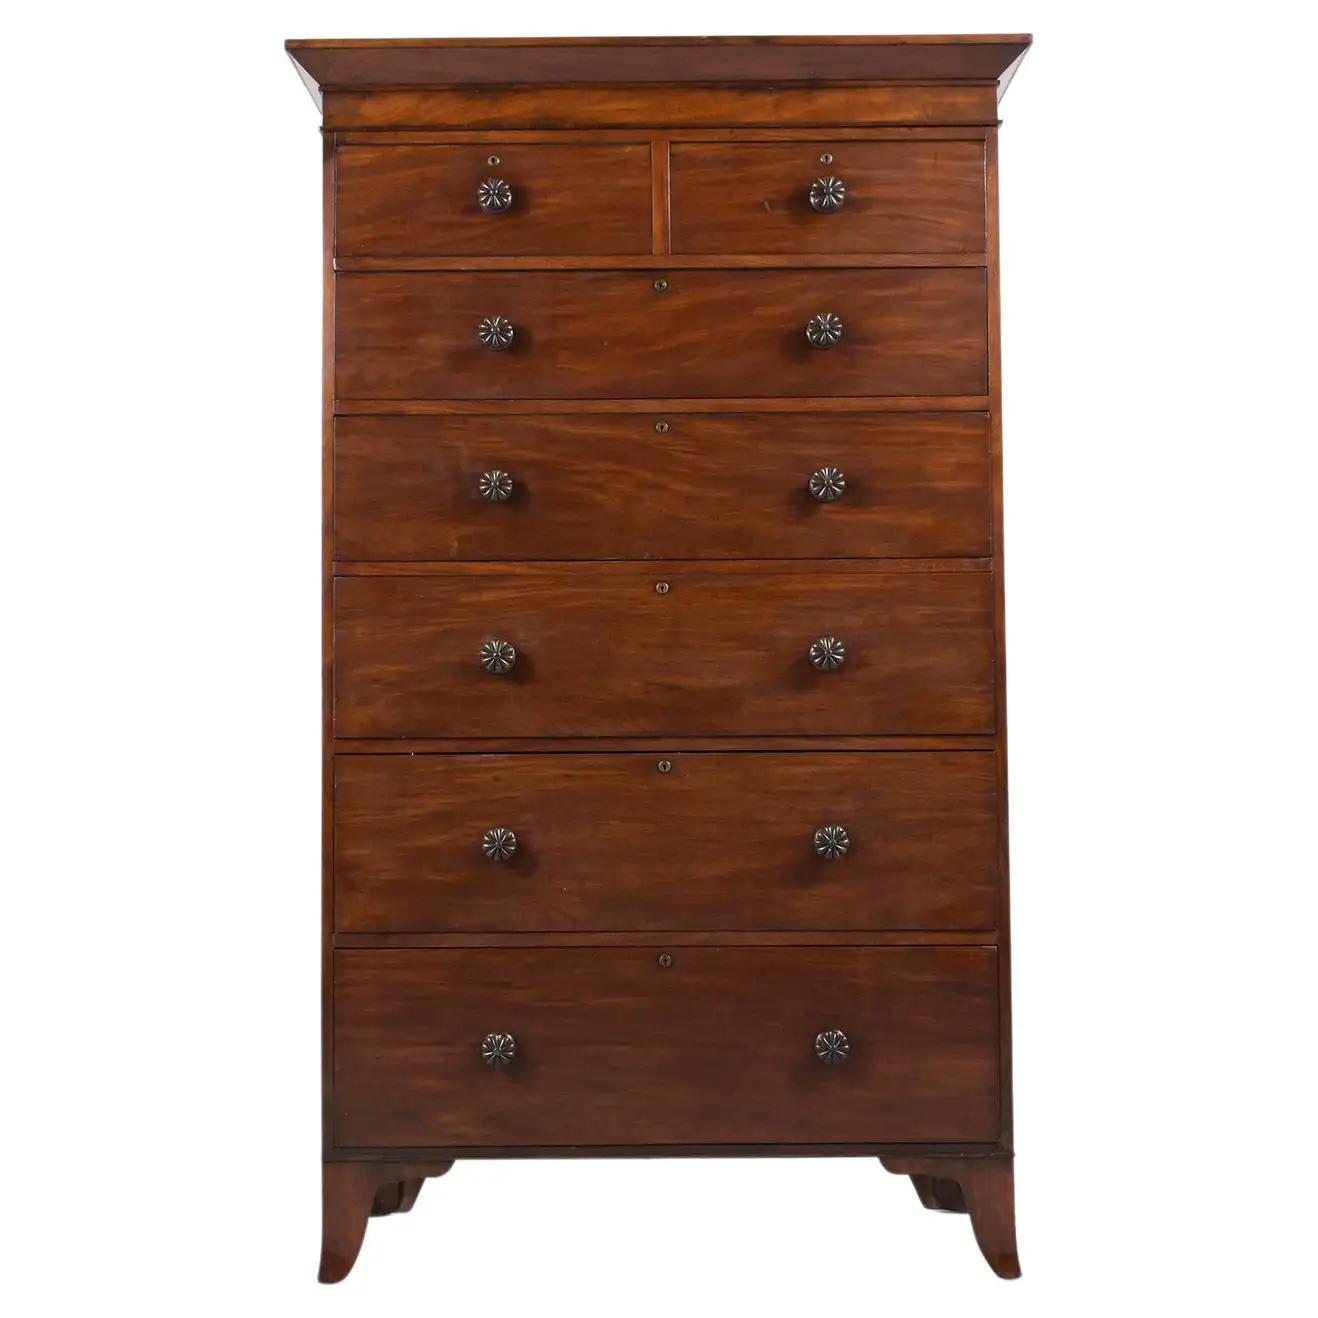 antique tall dresser